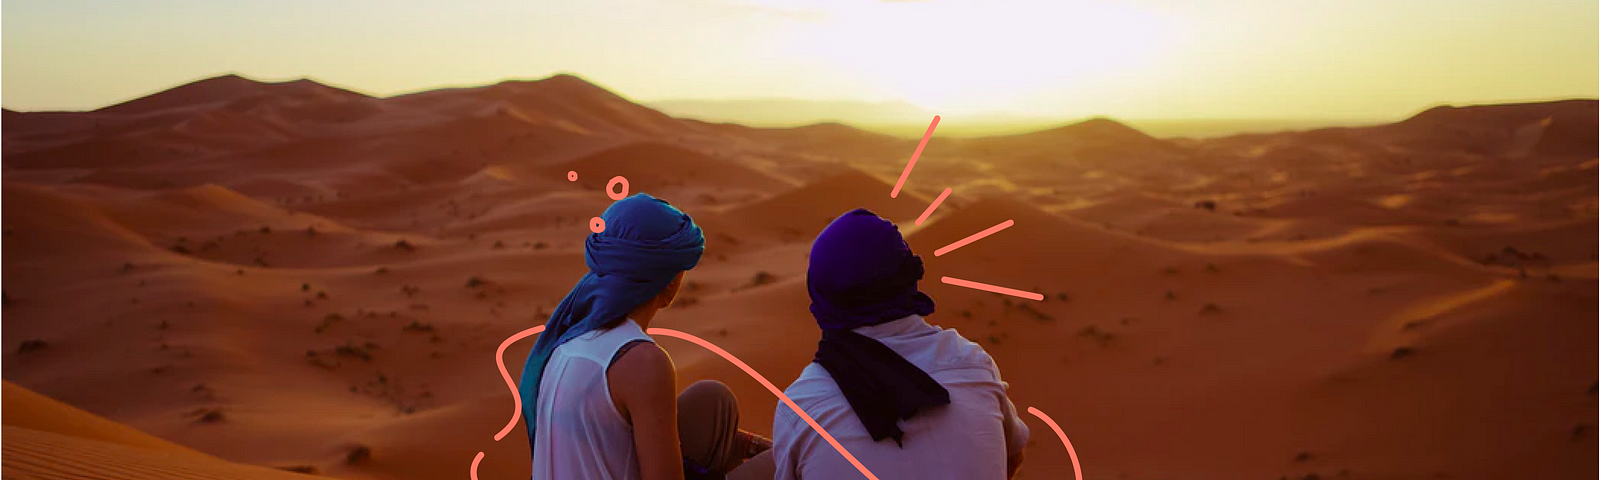 2 pessoas olhando horizonte no deserto